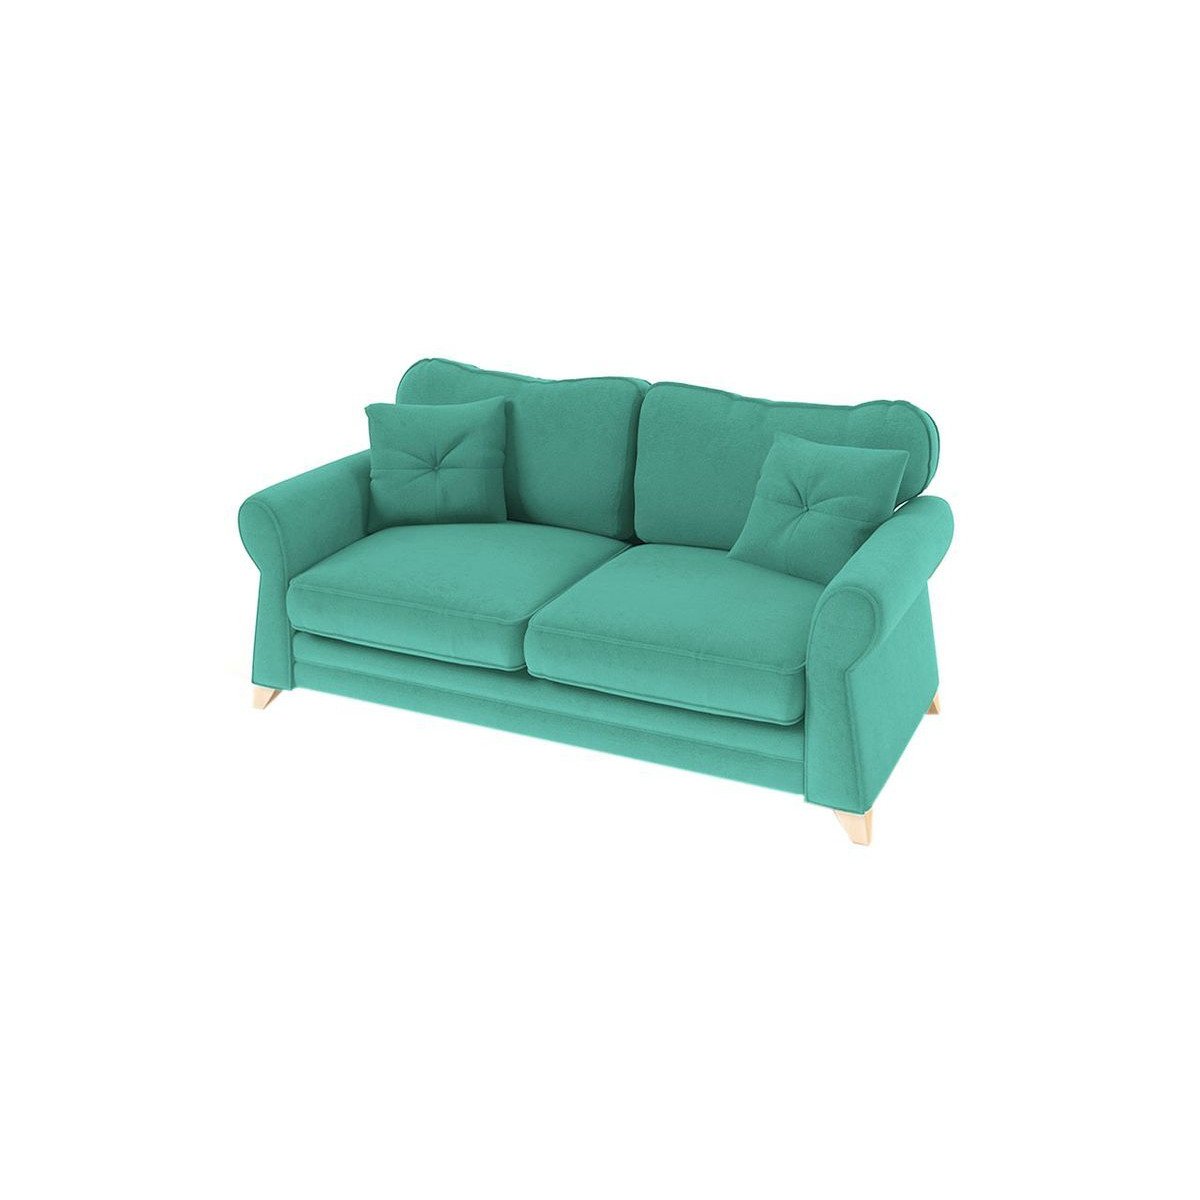 Lear 3 Seater Sofa, light blue